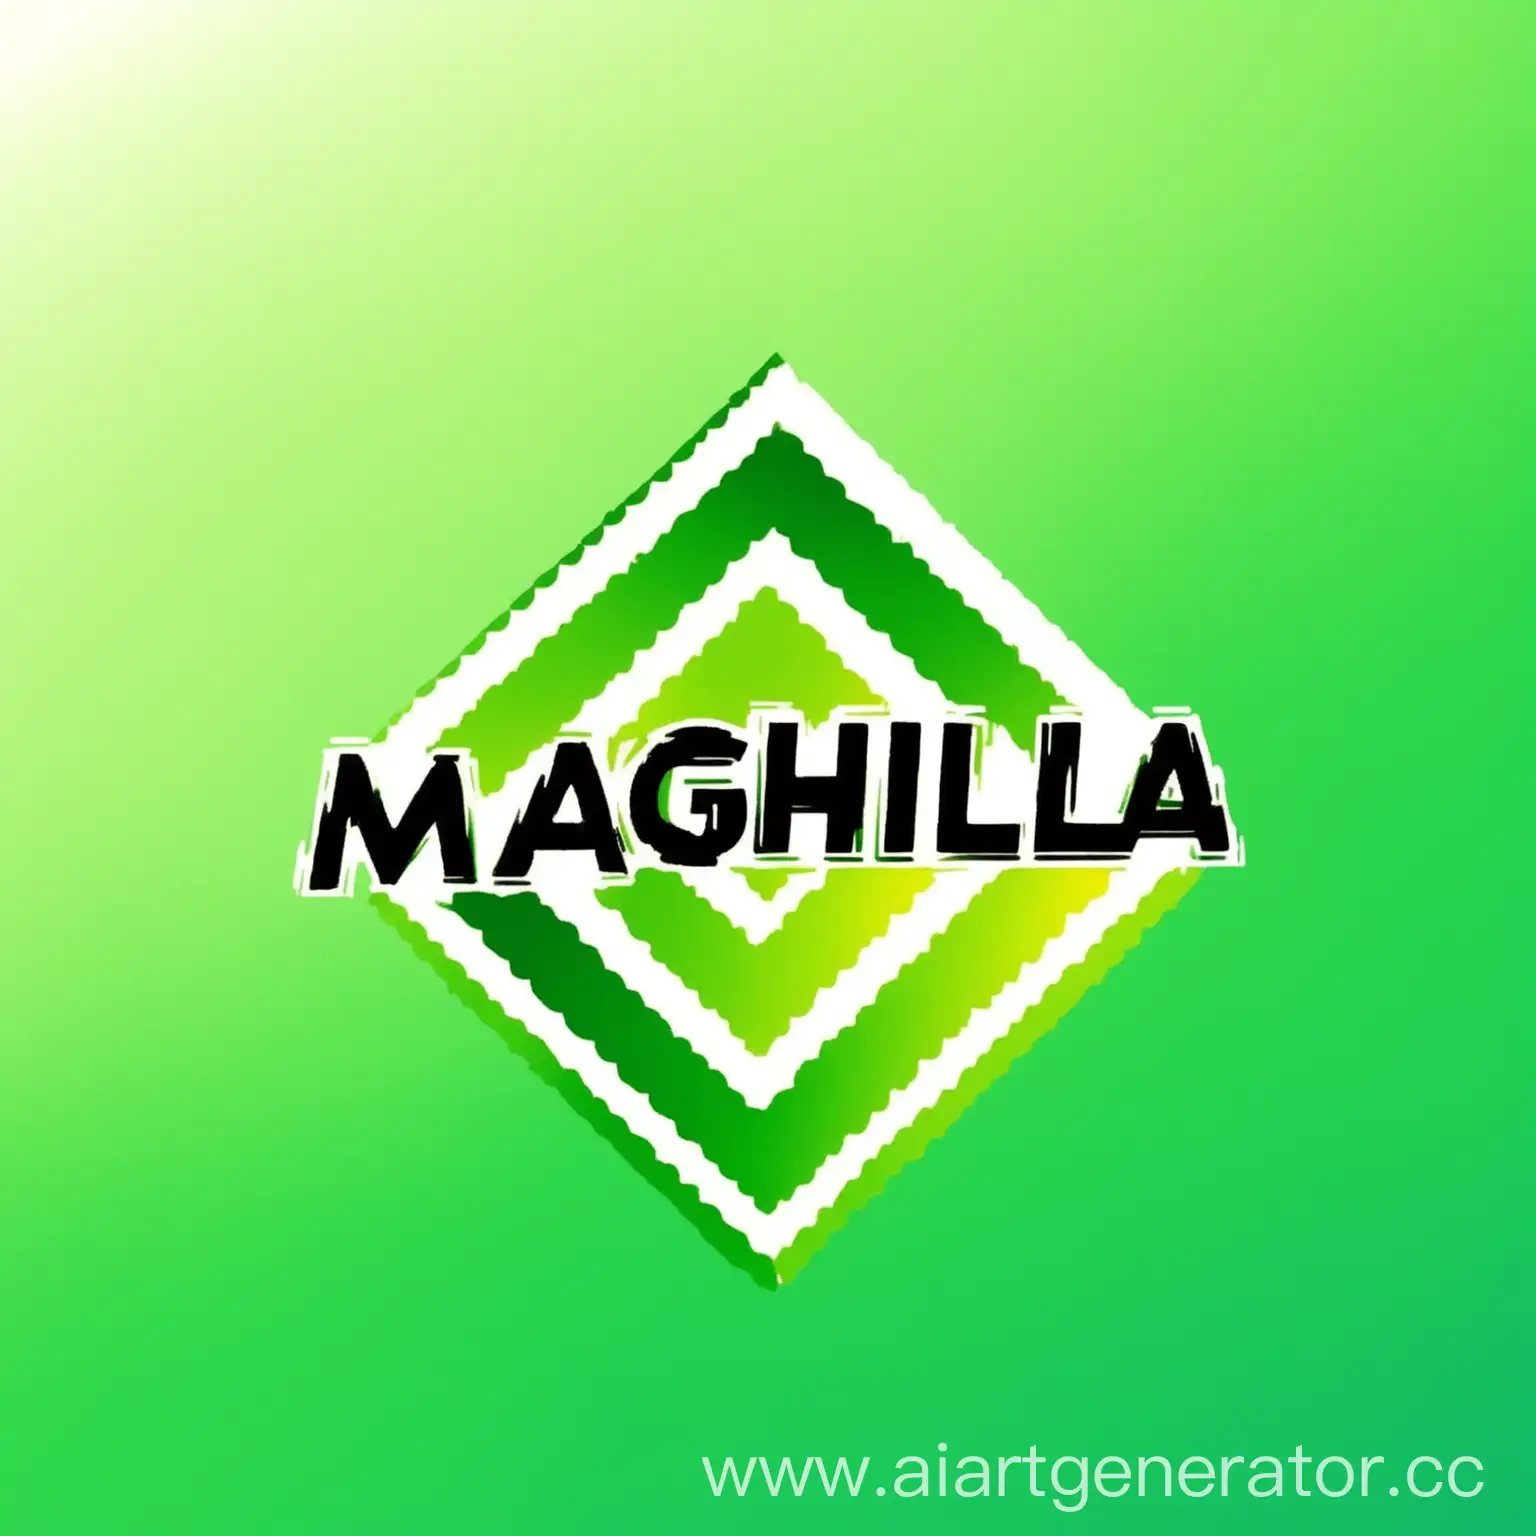 сделай мне логотип со слово MAGHILA но чтобы слово было чётко видно я хочу зёленыё градиент по диагонали 